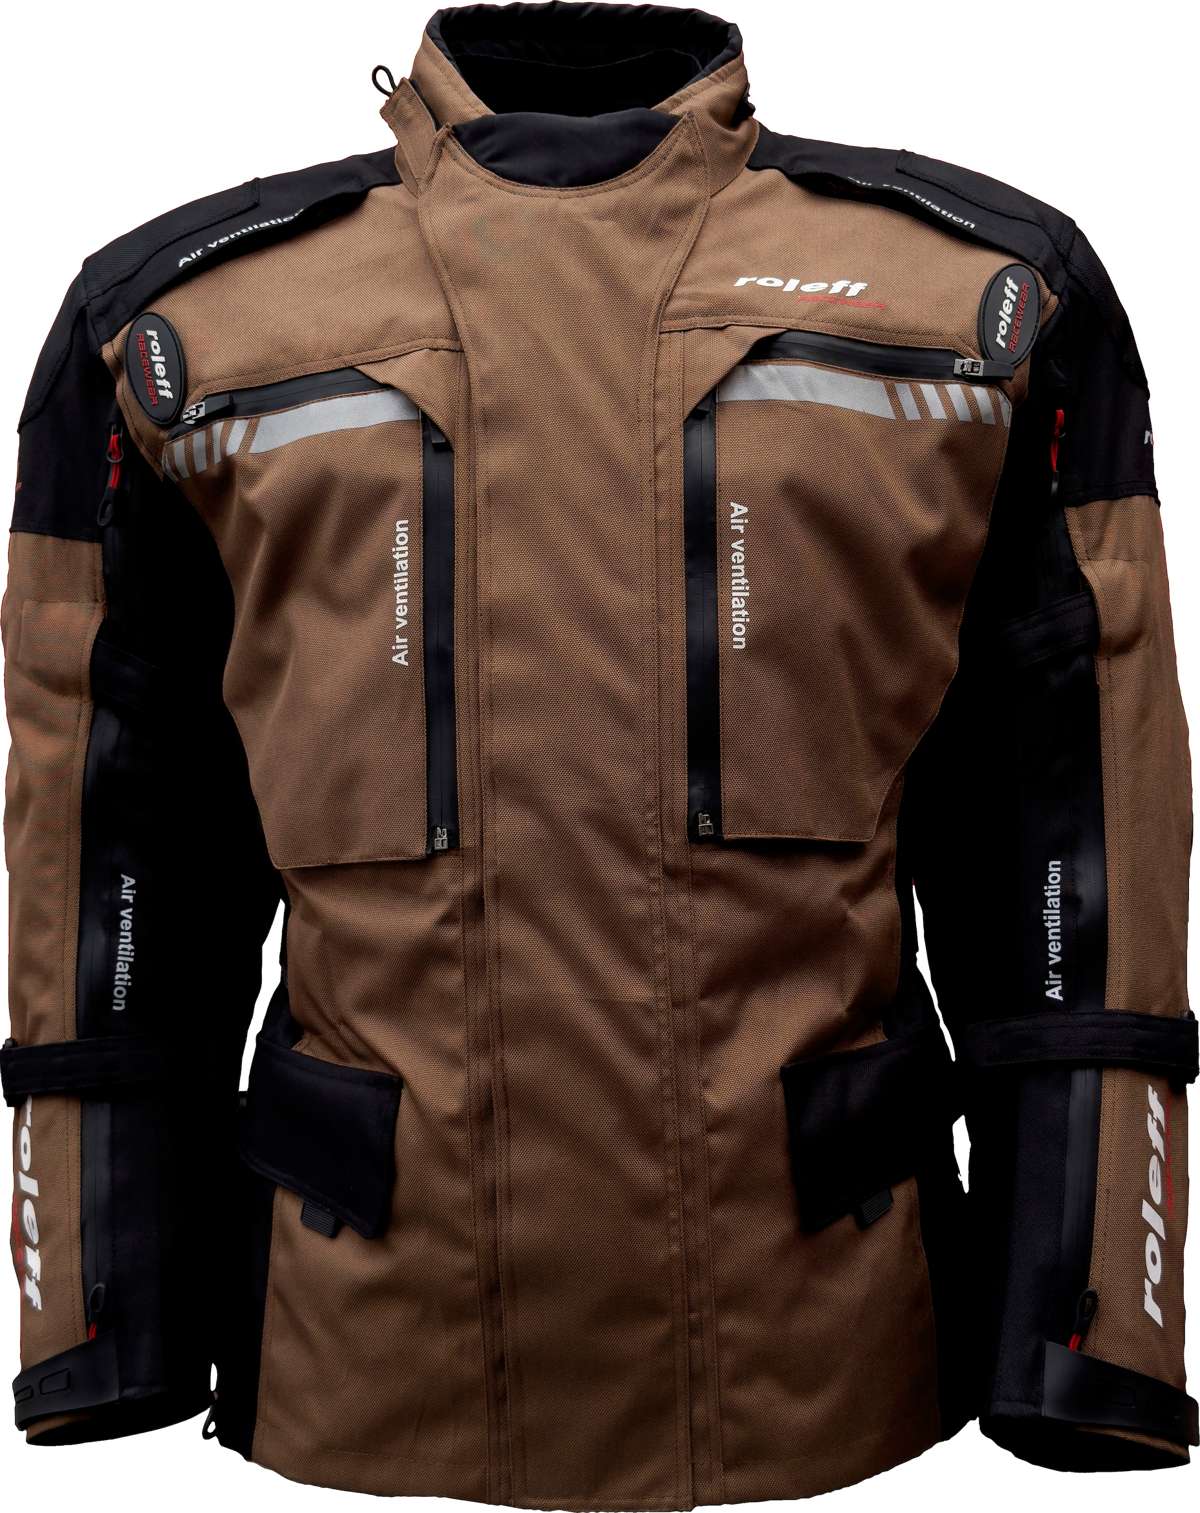 Мотоциклетная куртка с защитой, оптимальная вентиляция.